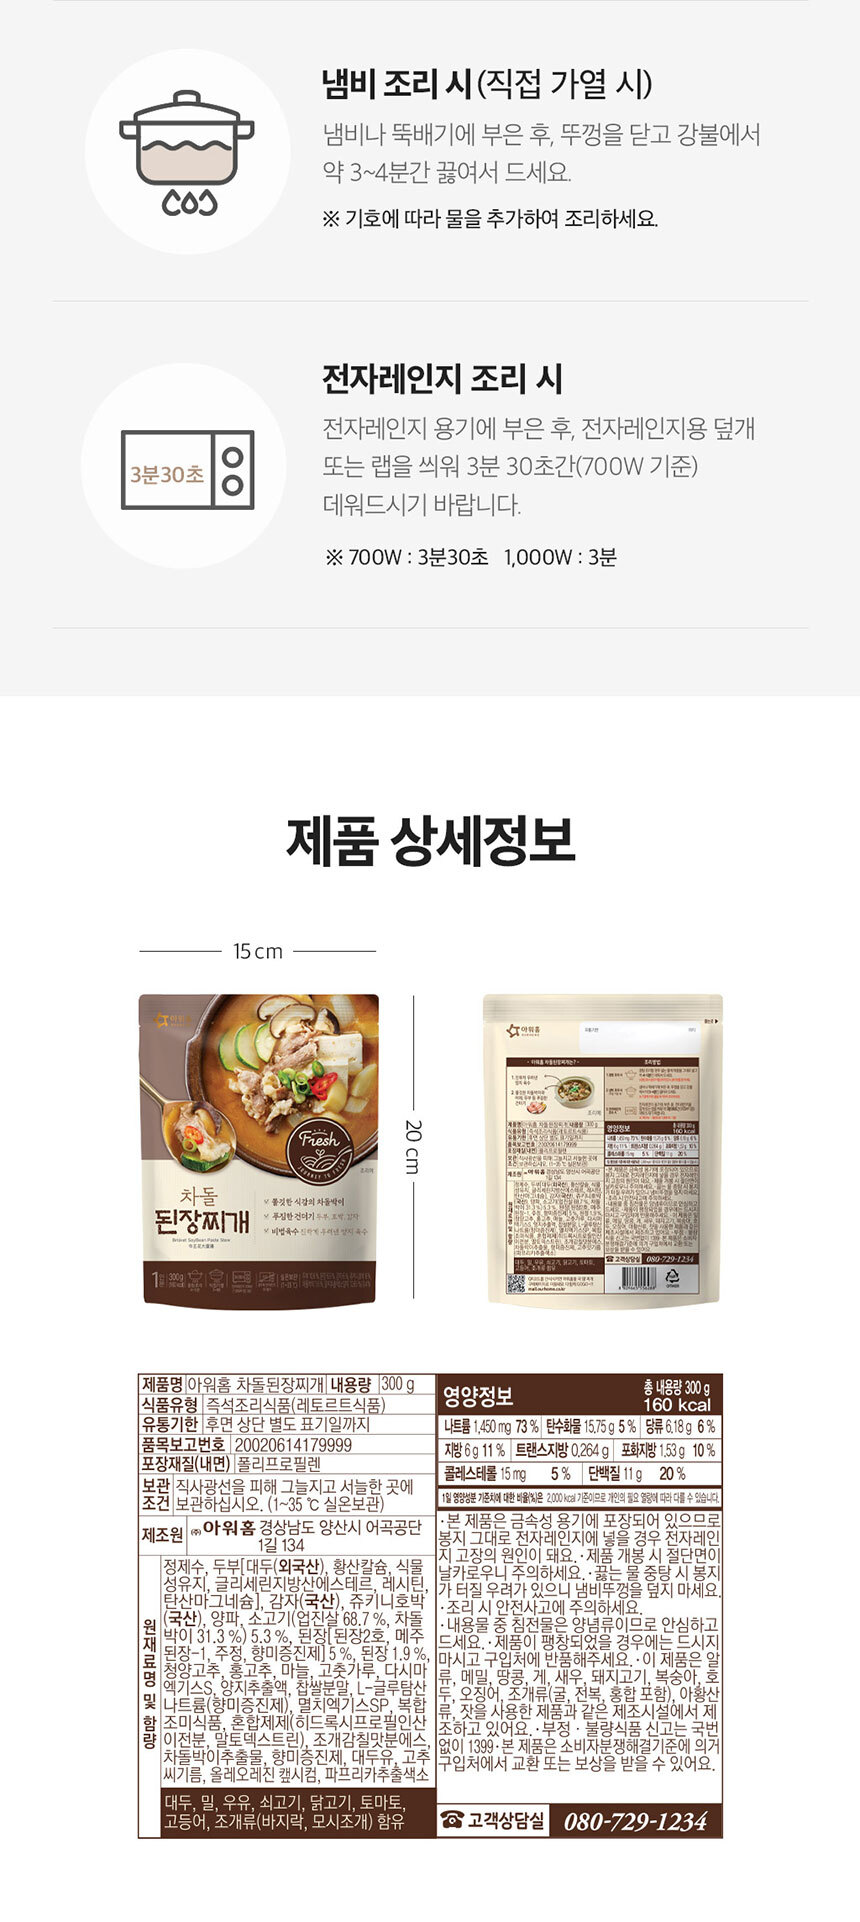 韓國食品-[아워홈] 차돌된장찌개 300g